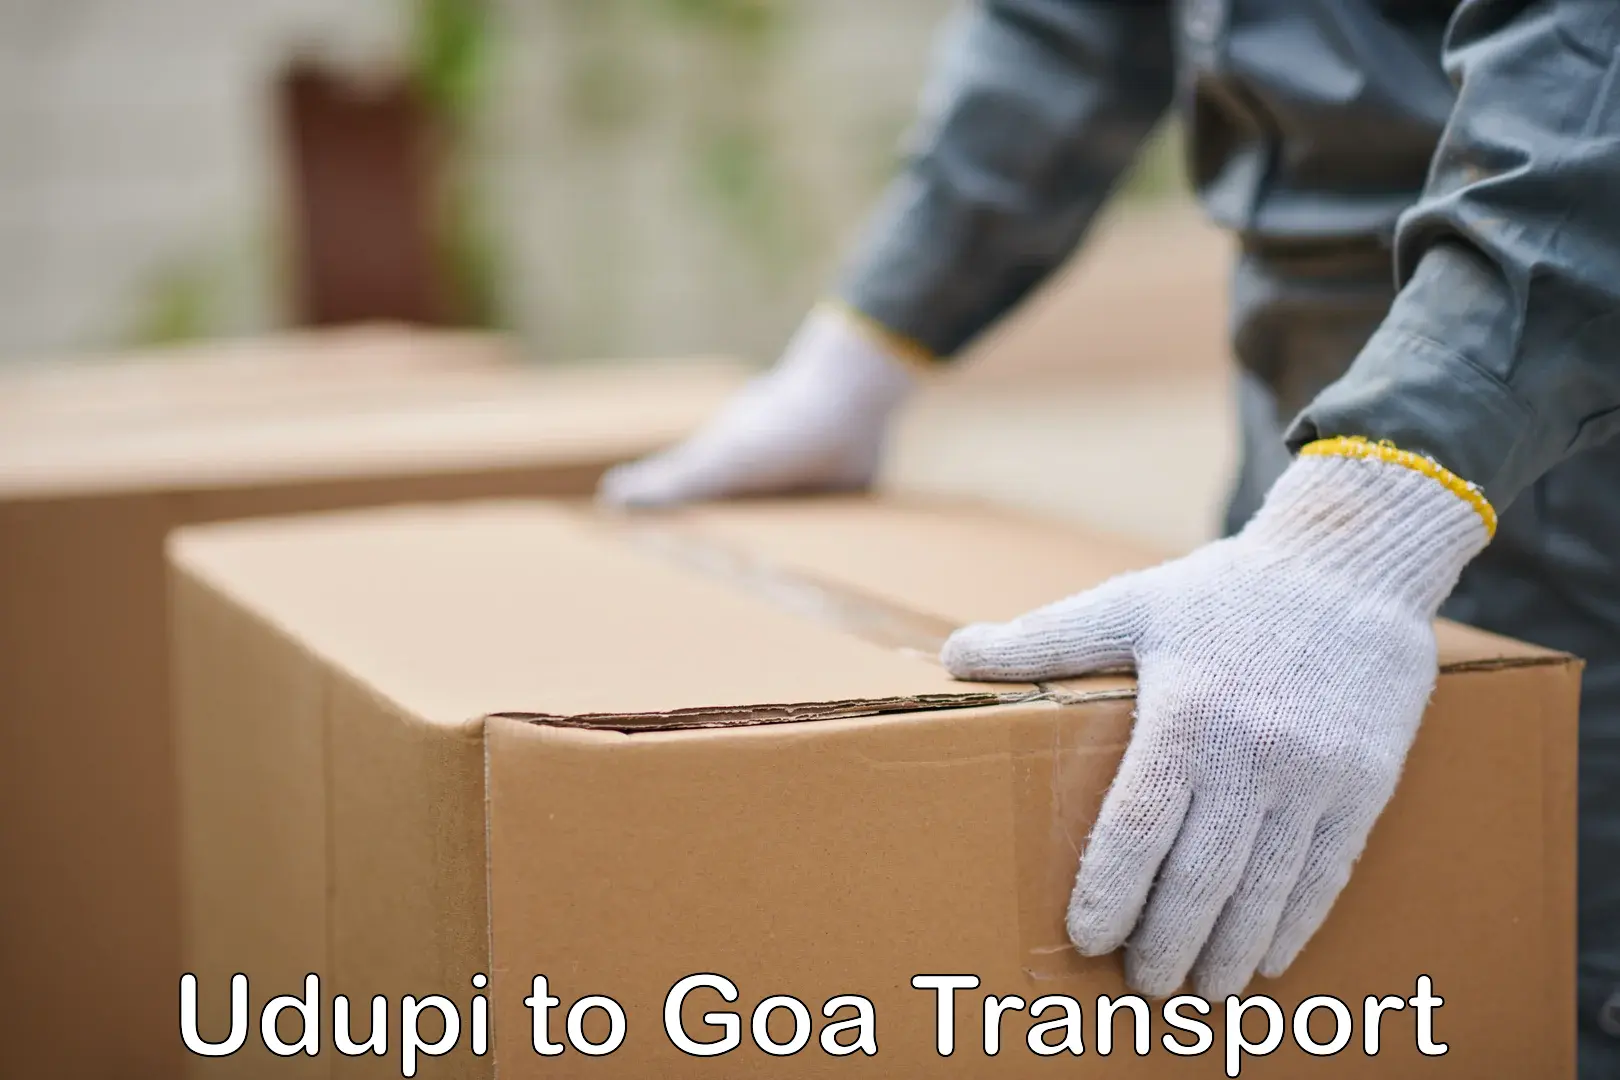 Cargo transport services Udupi to Goa University